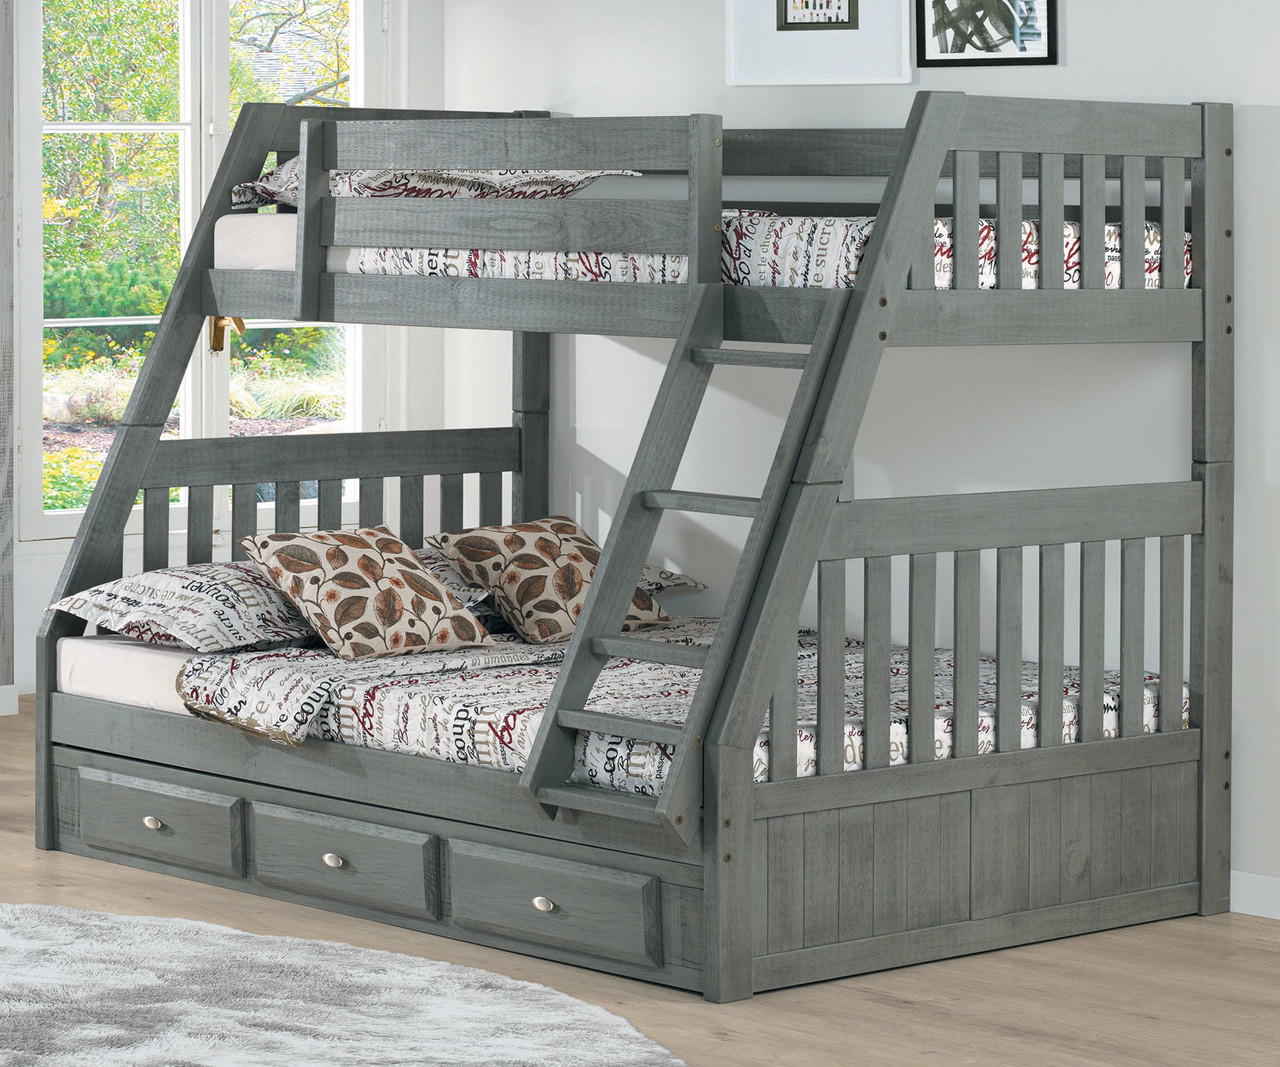 kids grey bunk beds